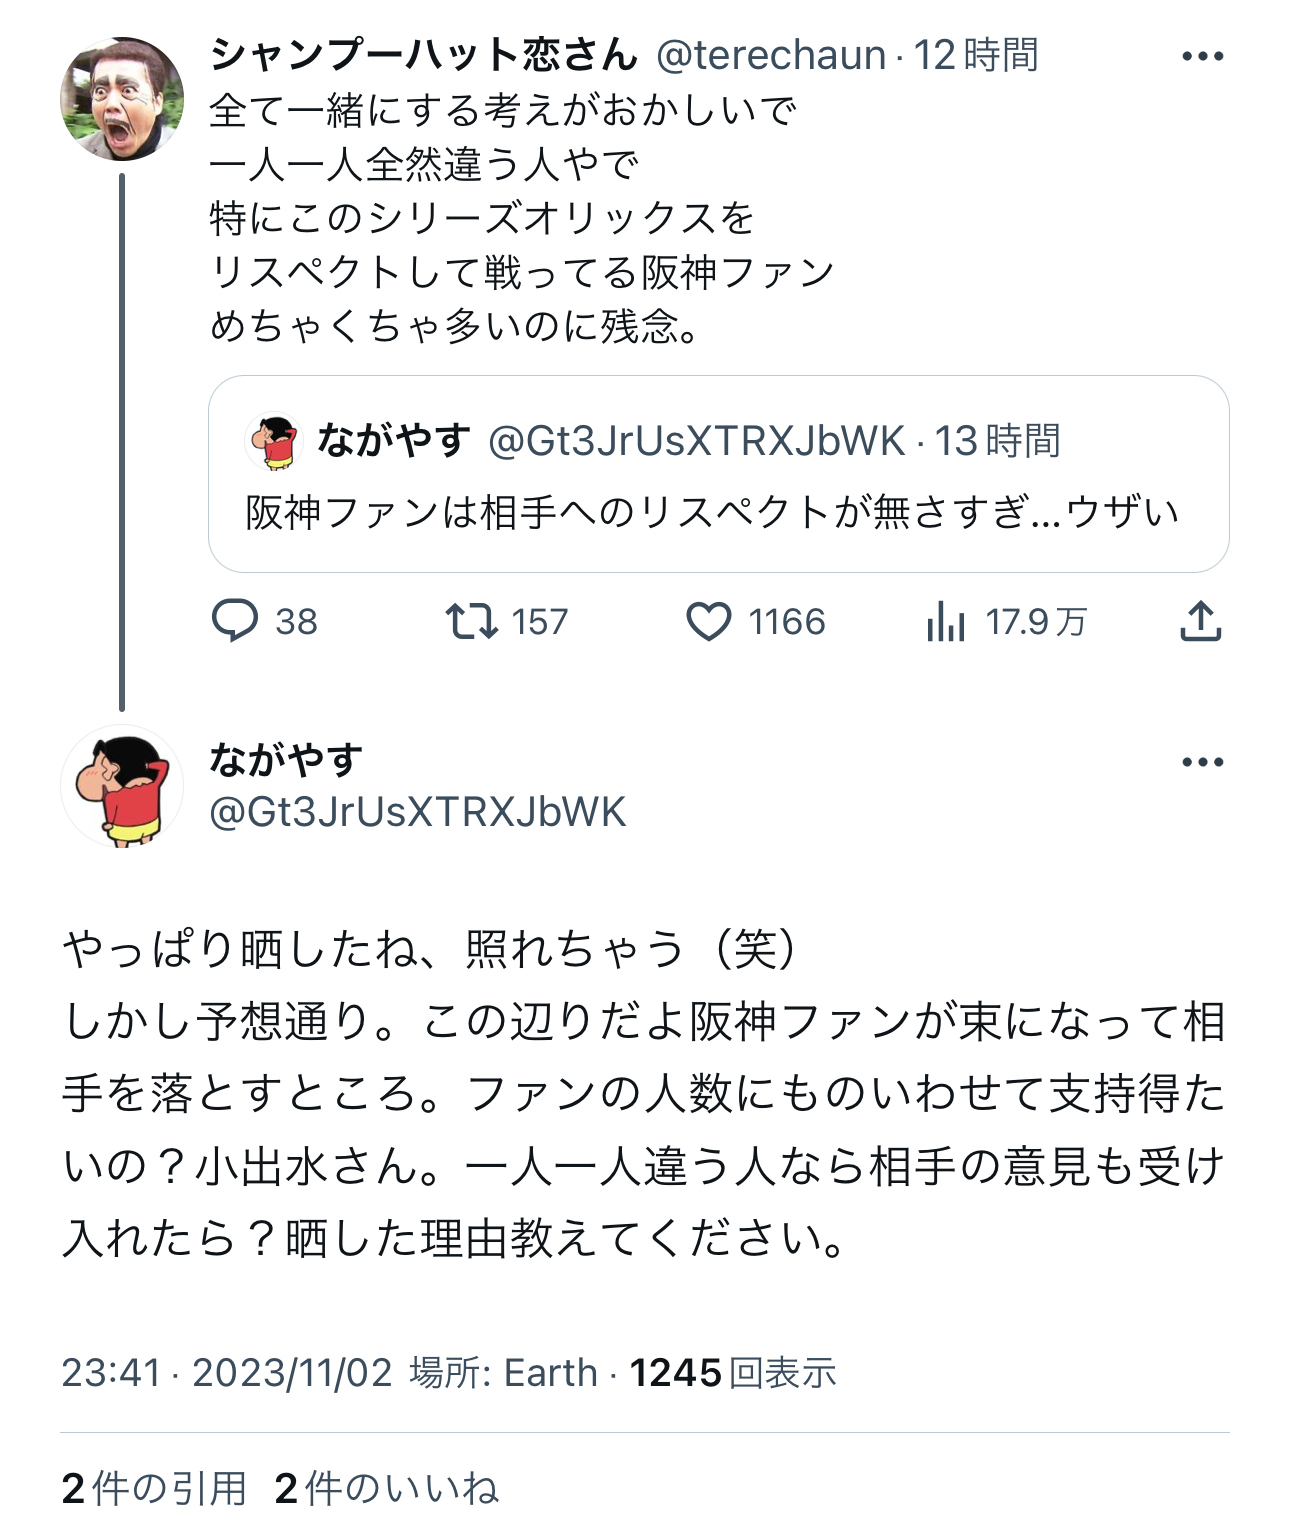 オリックスファンが阪神ファンのマナーの悪さを指摘も捏造とばれる \n_1